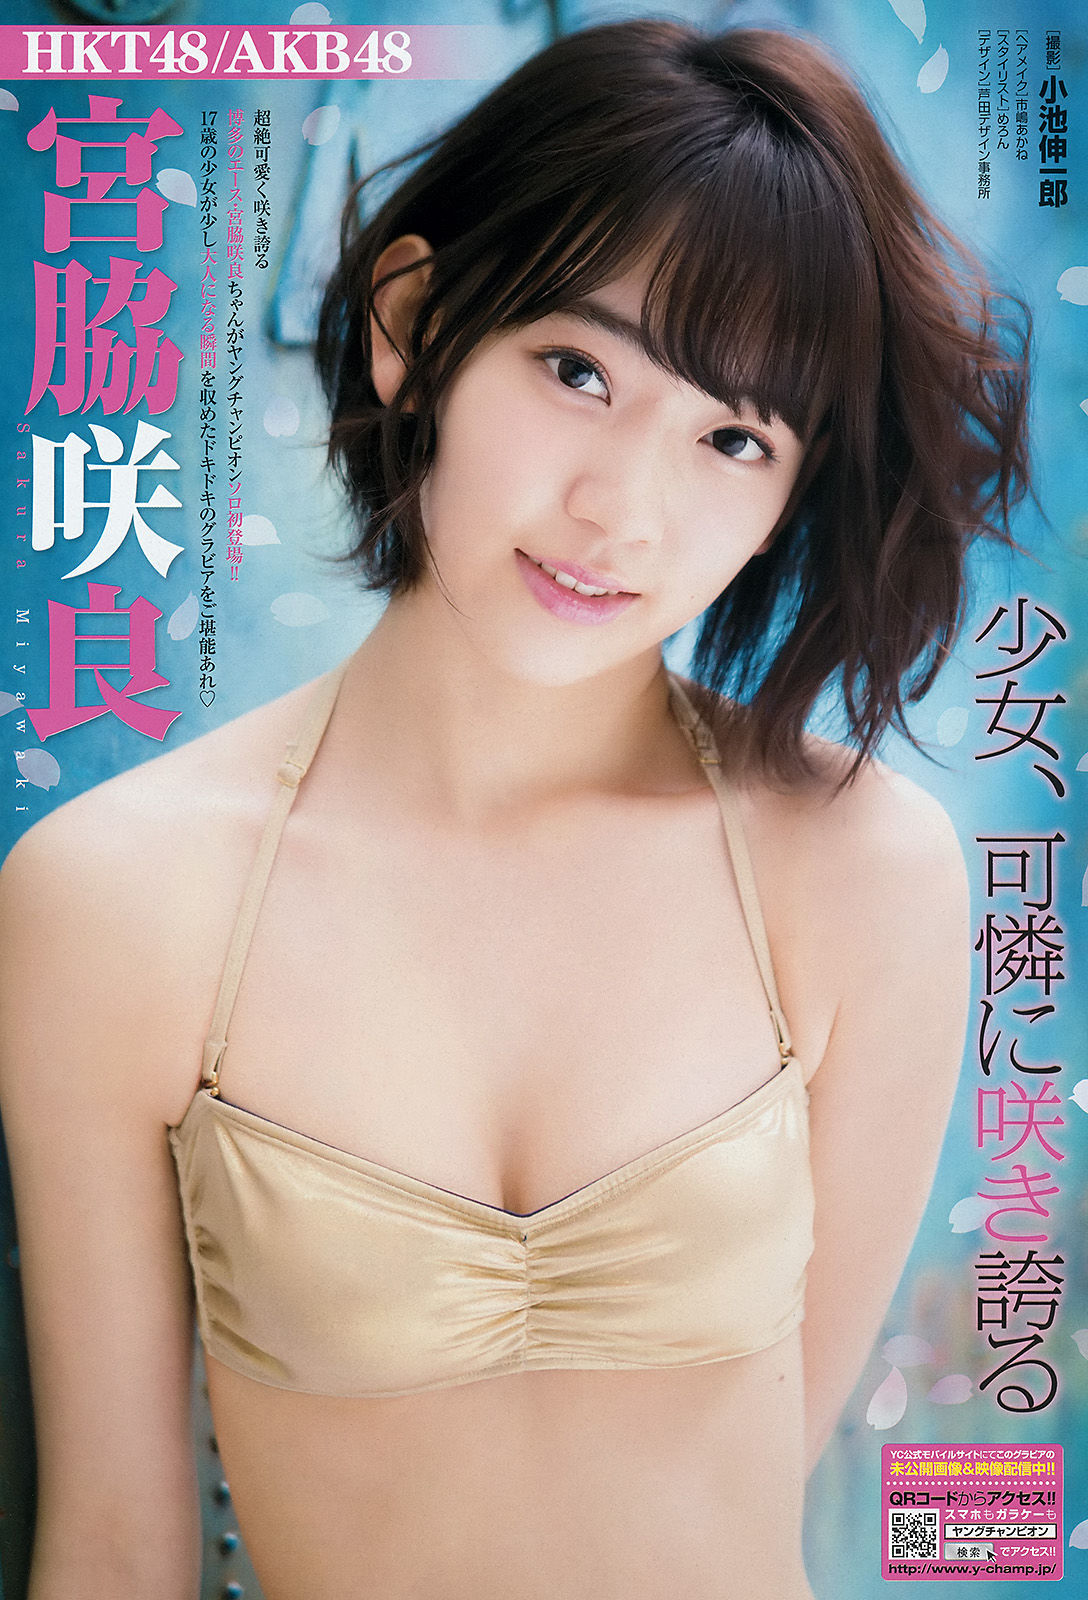 [Young Champion] Sakura Miyawaki Jun Amaki 2015 No.11 Photograph Page 13 No.2f5375